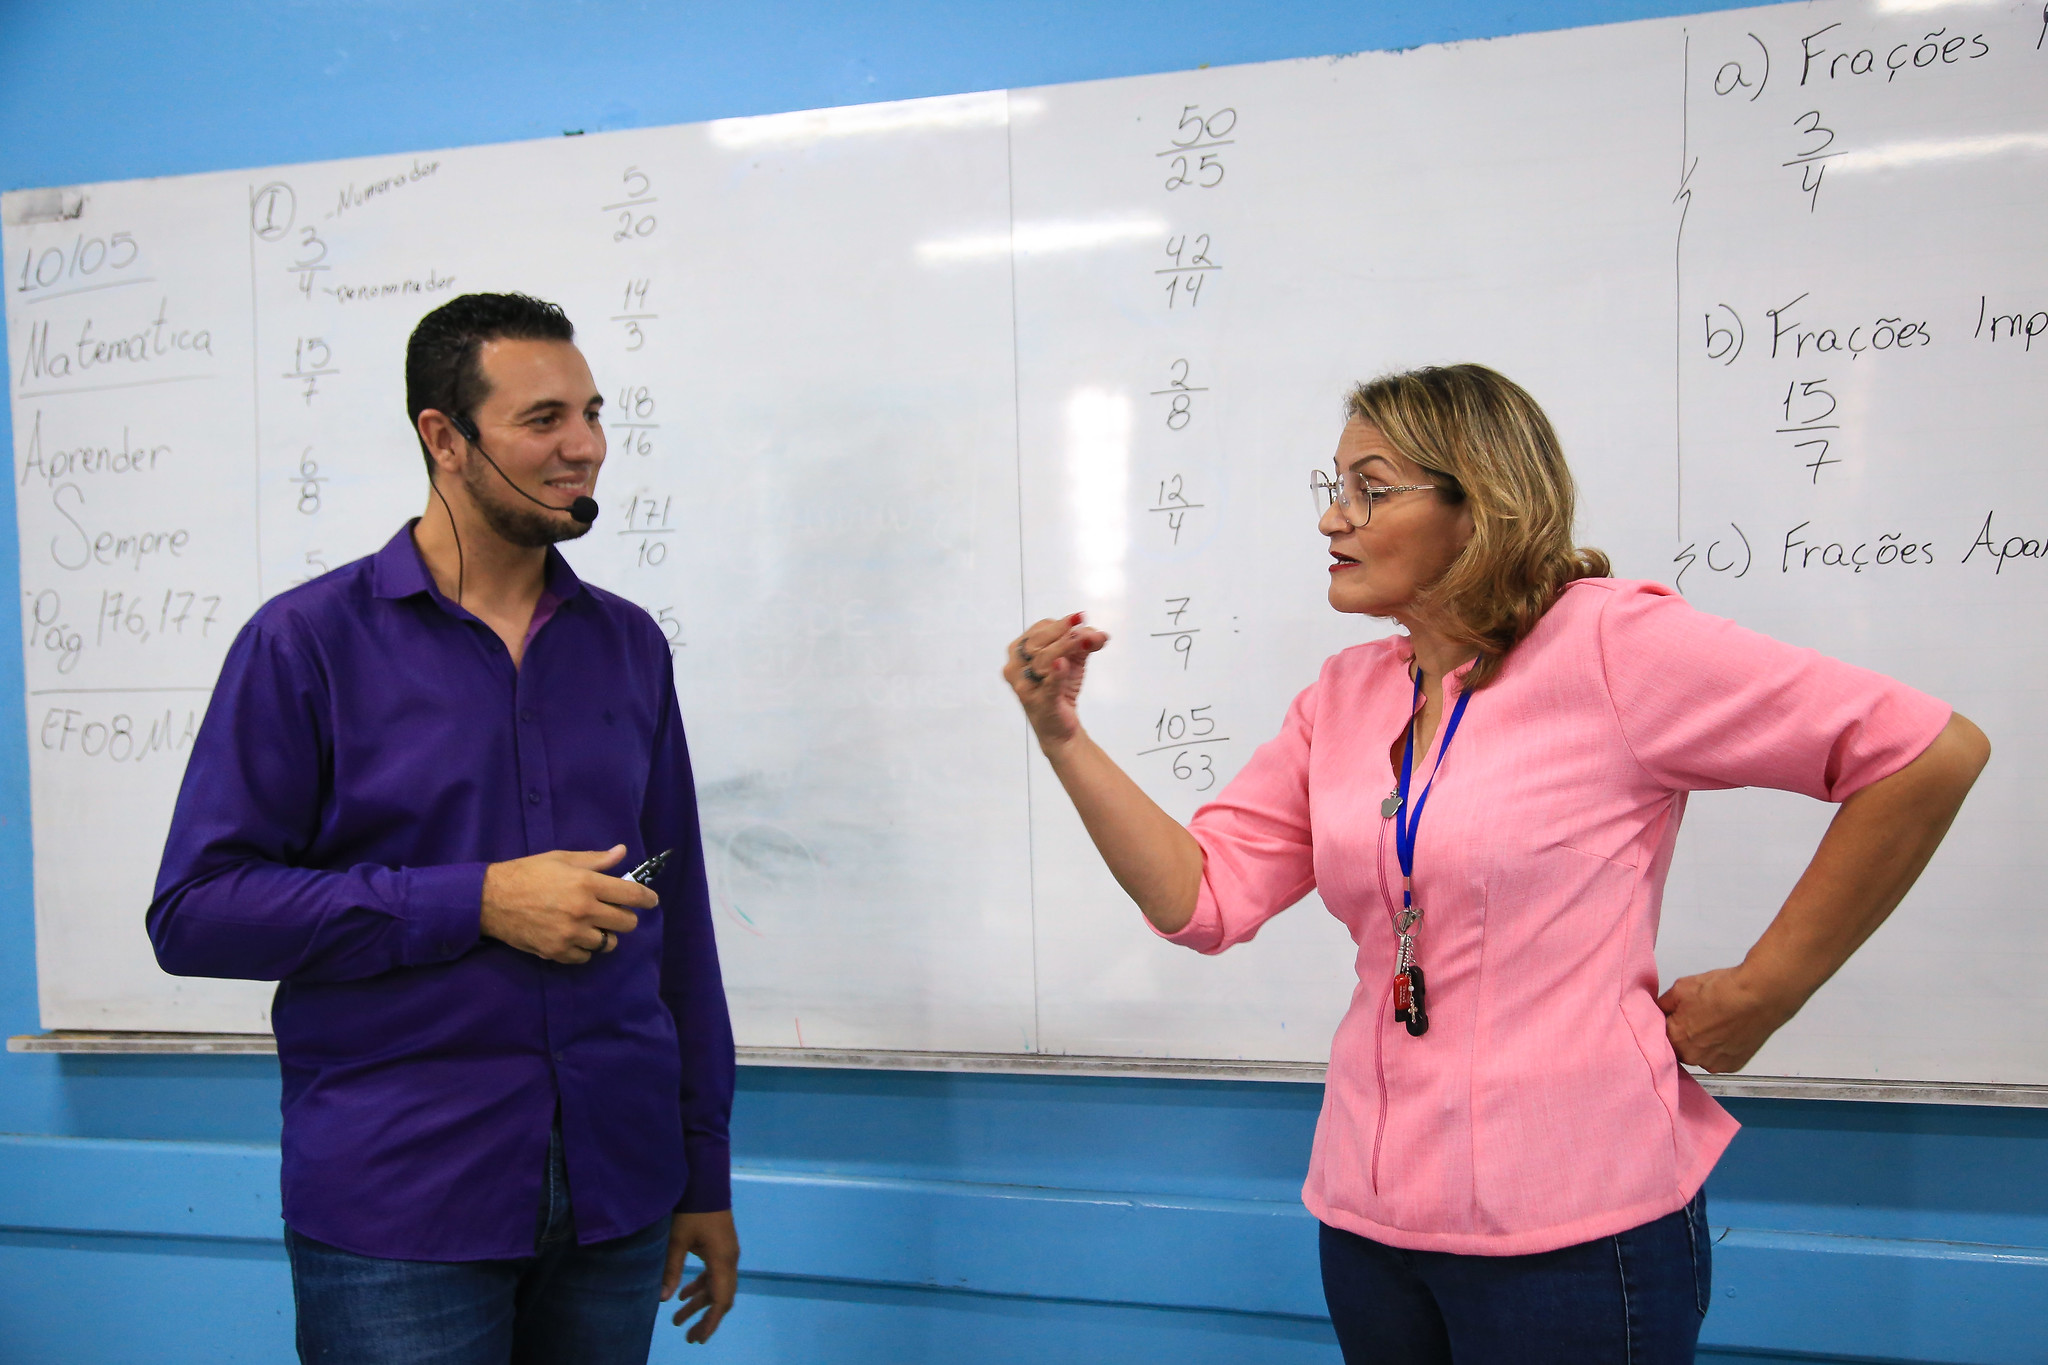 Célia Cristina de Abreu Ferreira, professora de Língua Portuguesa, assume o turno da tarde do ensino médio e o filho Leonardo Vitor de Freitas dá aulas de matemática